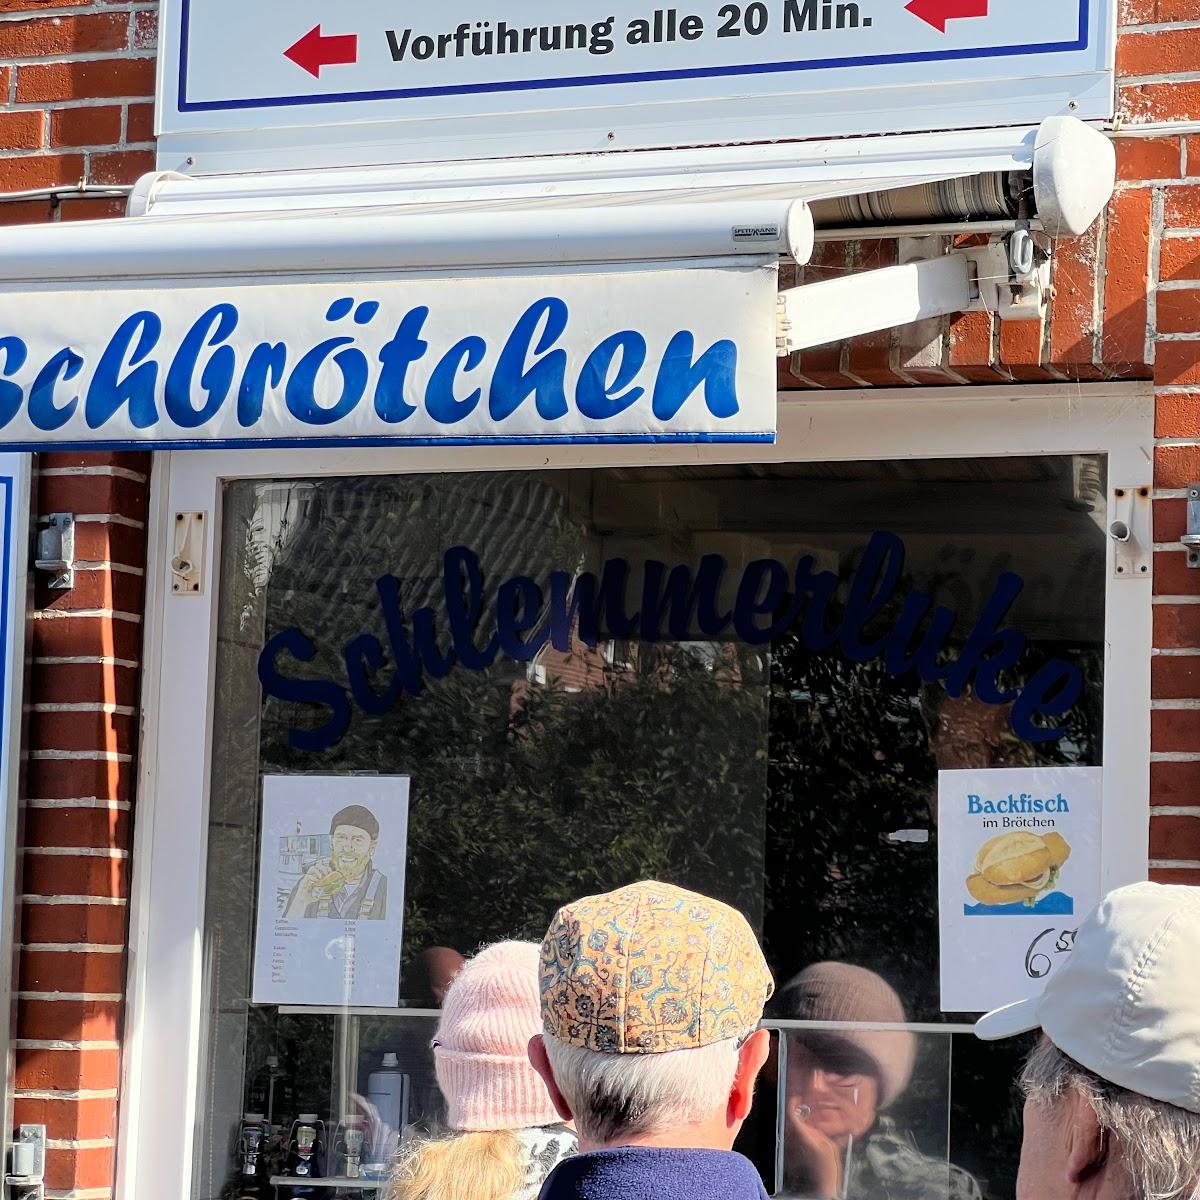 Restaurant "Schlemmerluke" in Hooge